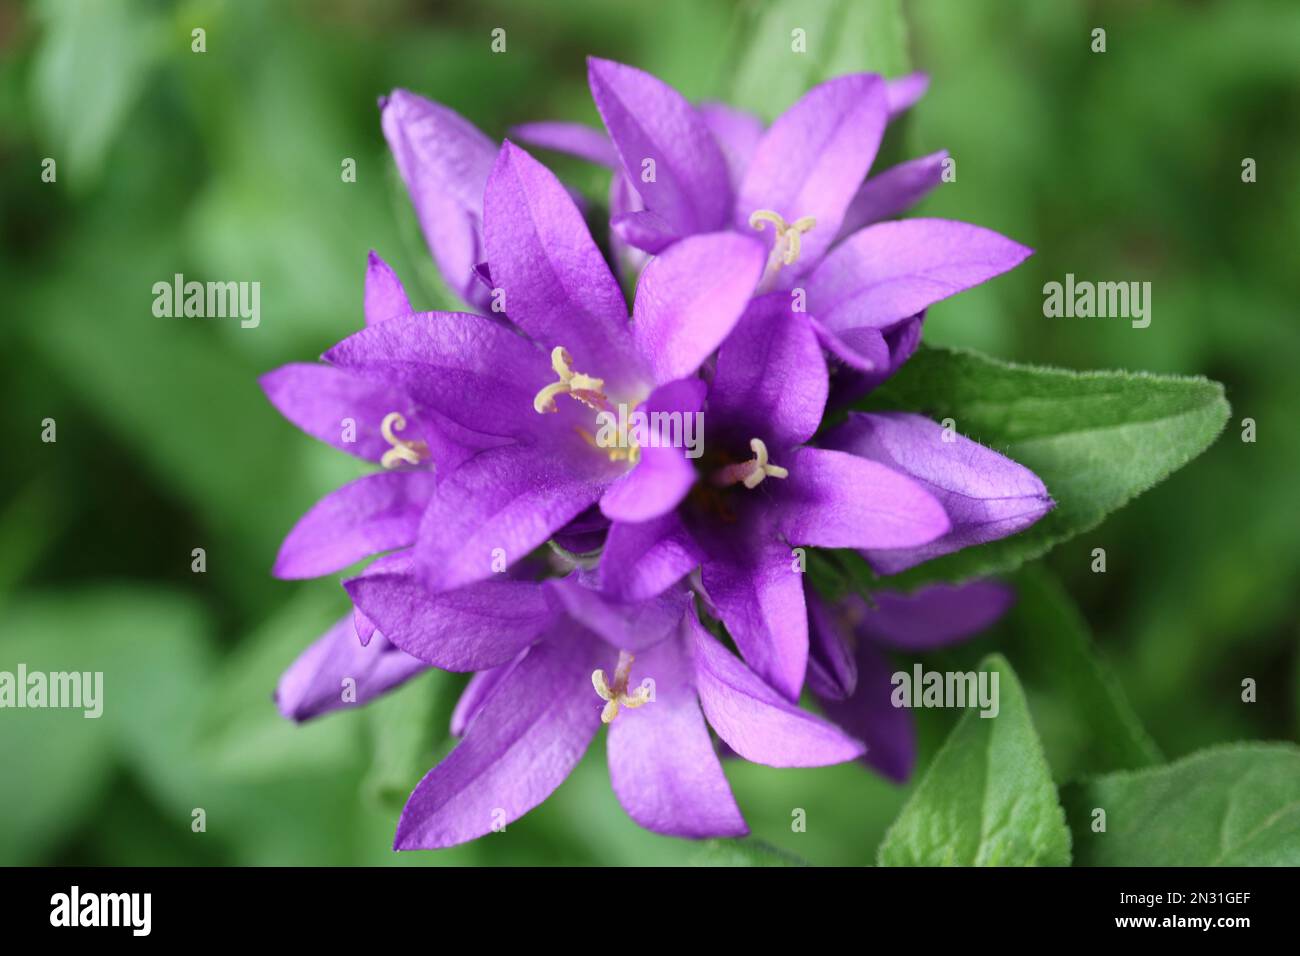 Flores de campana púrpura con pétalos delicados y hojas verdes en el jardín, Campanula glomerata, flores de campana púrpura macro, belleza en la naturaleza, phot floral Foto de stock